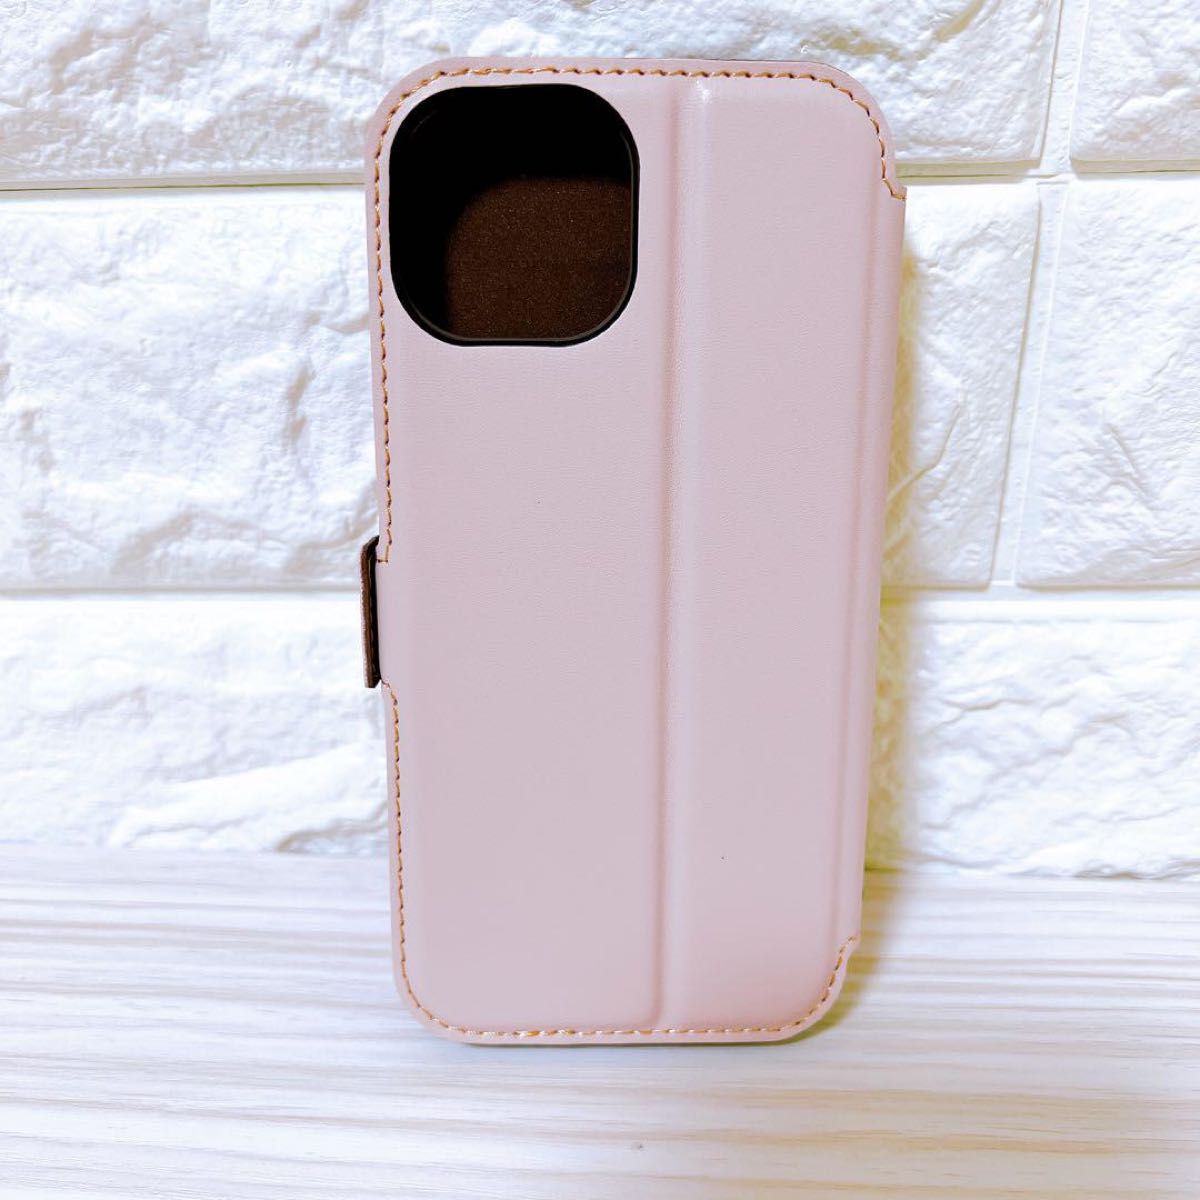 【即購入OK♪早い者勝ち!】iPhone13ケース 手帳型 ピンク カード収納 スタンド機能 マグネット式 プレゼント付  カバー